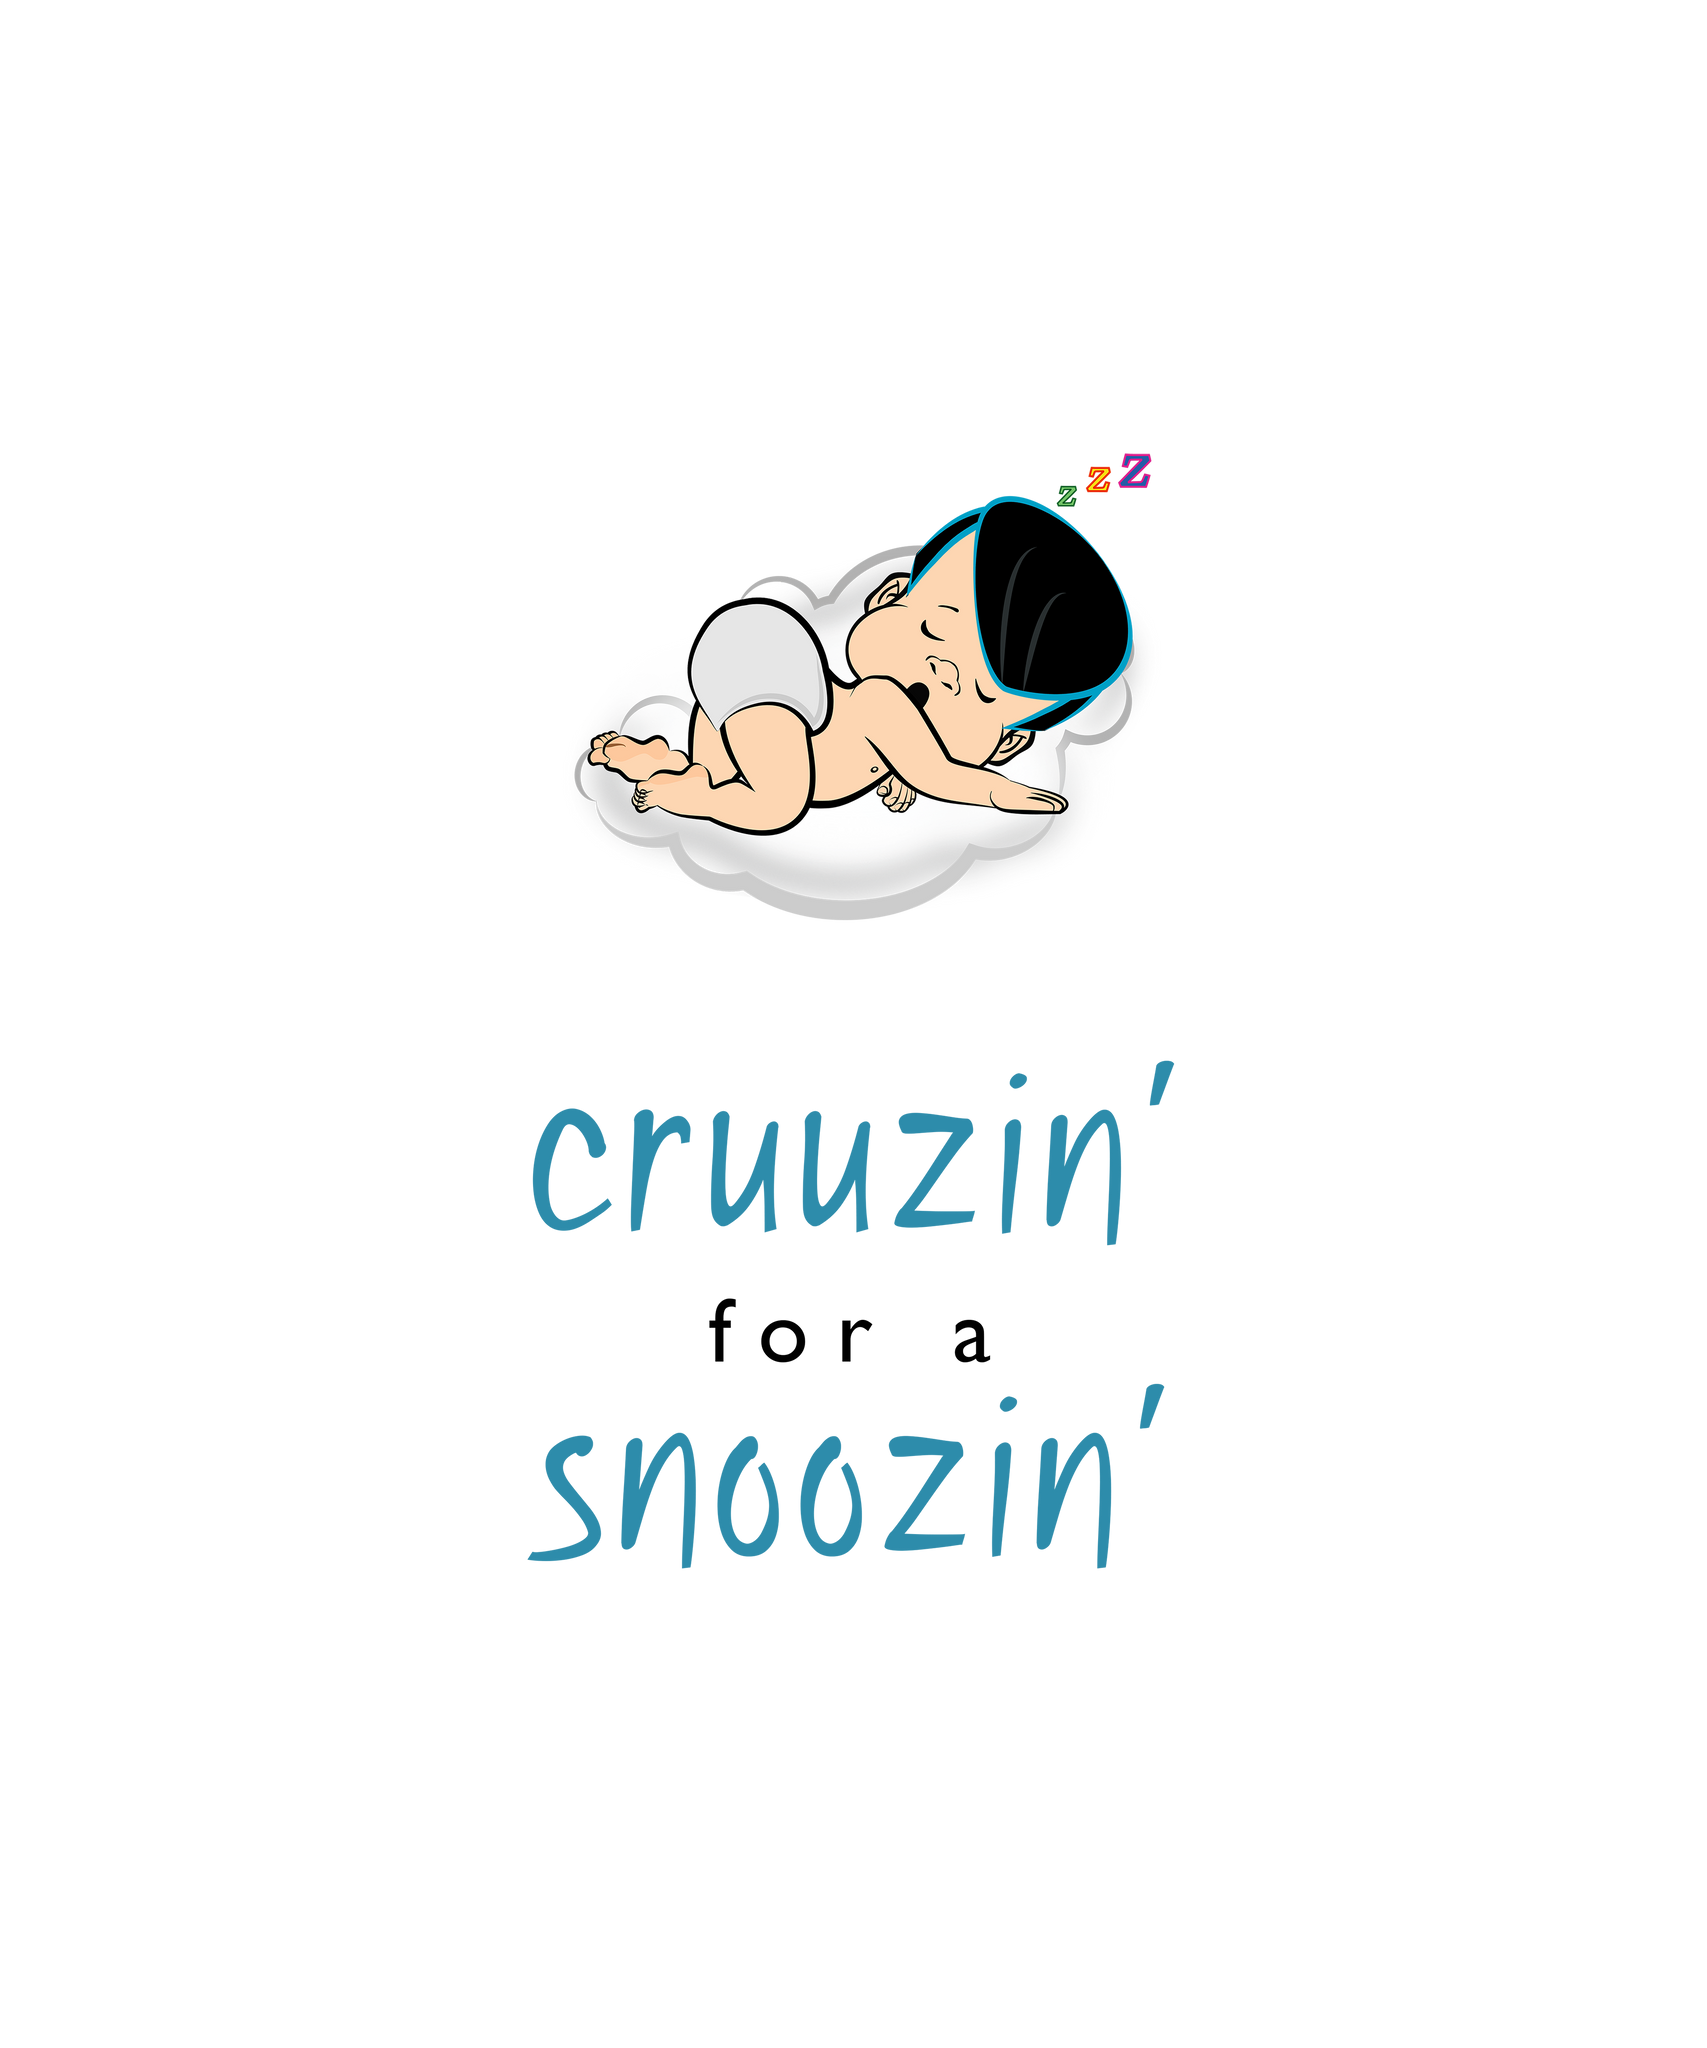 PBTZ0691_cruuzin' for a snoozin'_boy_3